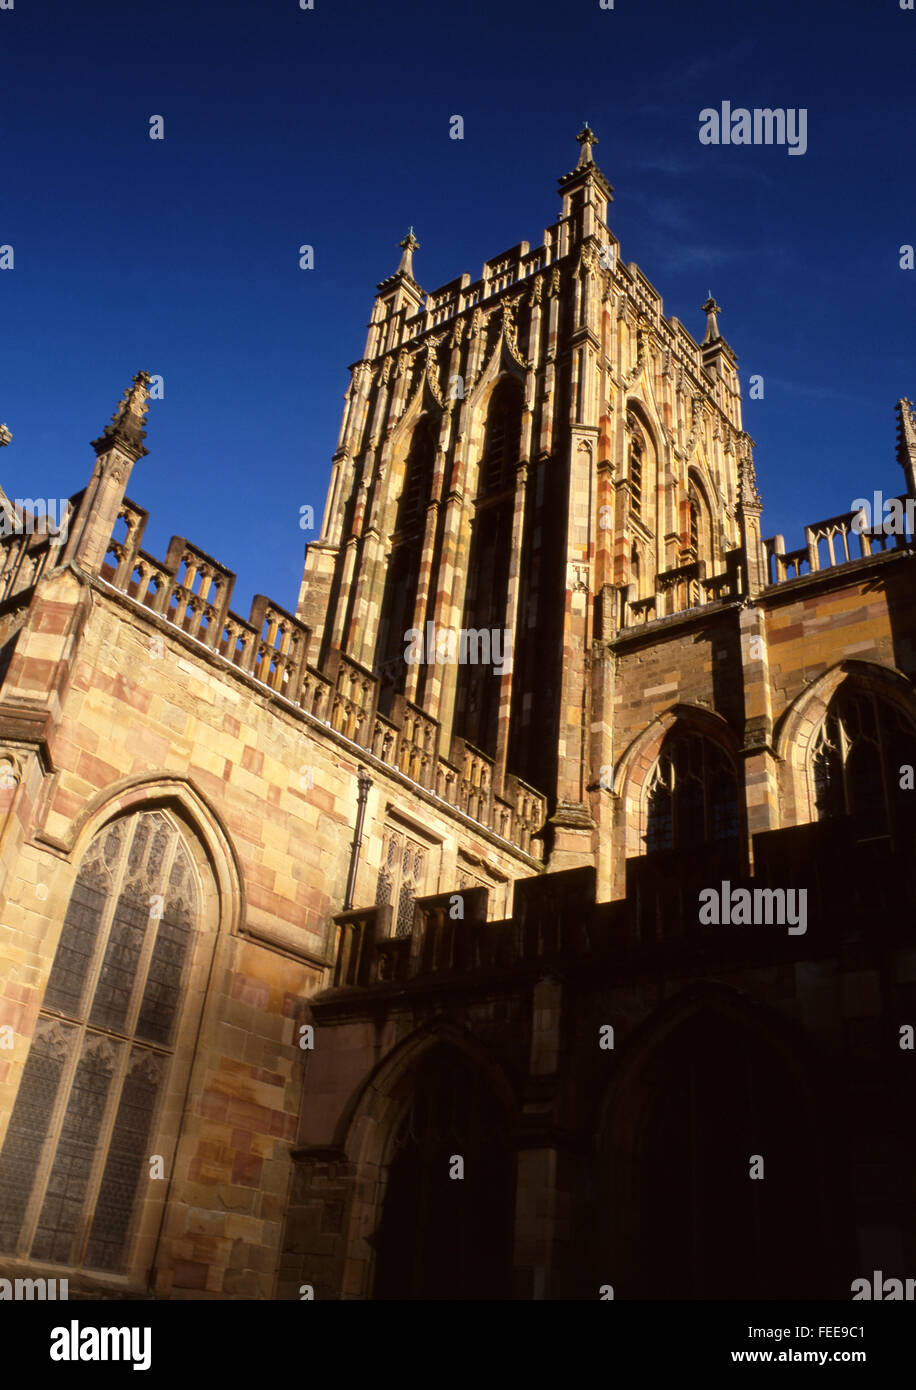 Prieuré de Great Malvern tour centrale gothique perpendiculaire anglais ctyle Midlands Worcestershire architecture Angleterre UK Banque D'Images